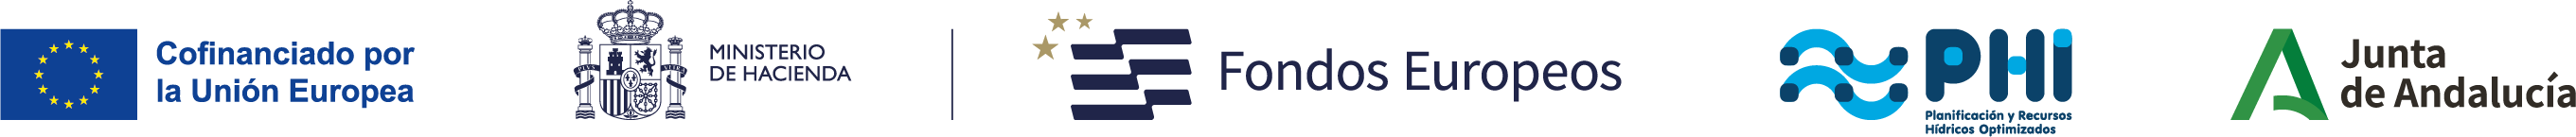 Logos identificativos de cofinanciación por la Unión Europea a través de fondos europeos, con la colaboración del Ministerio de Hacienda y la Junta de Andalucía. Logo del Proyecto Planificación y Recursos Hídricos optimizados